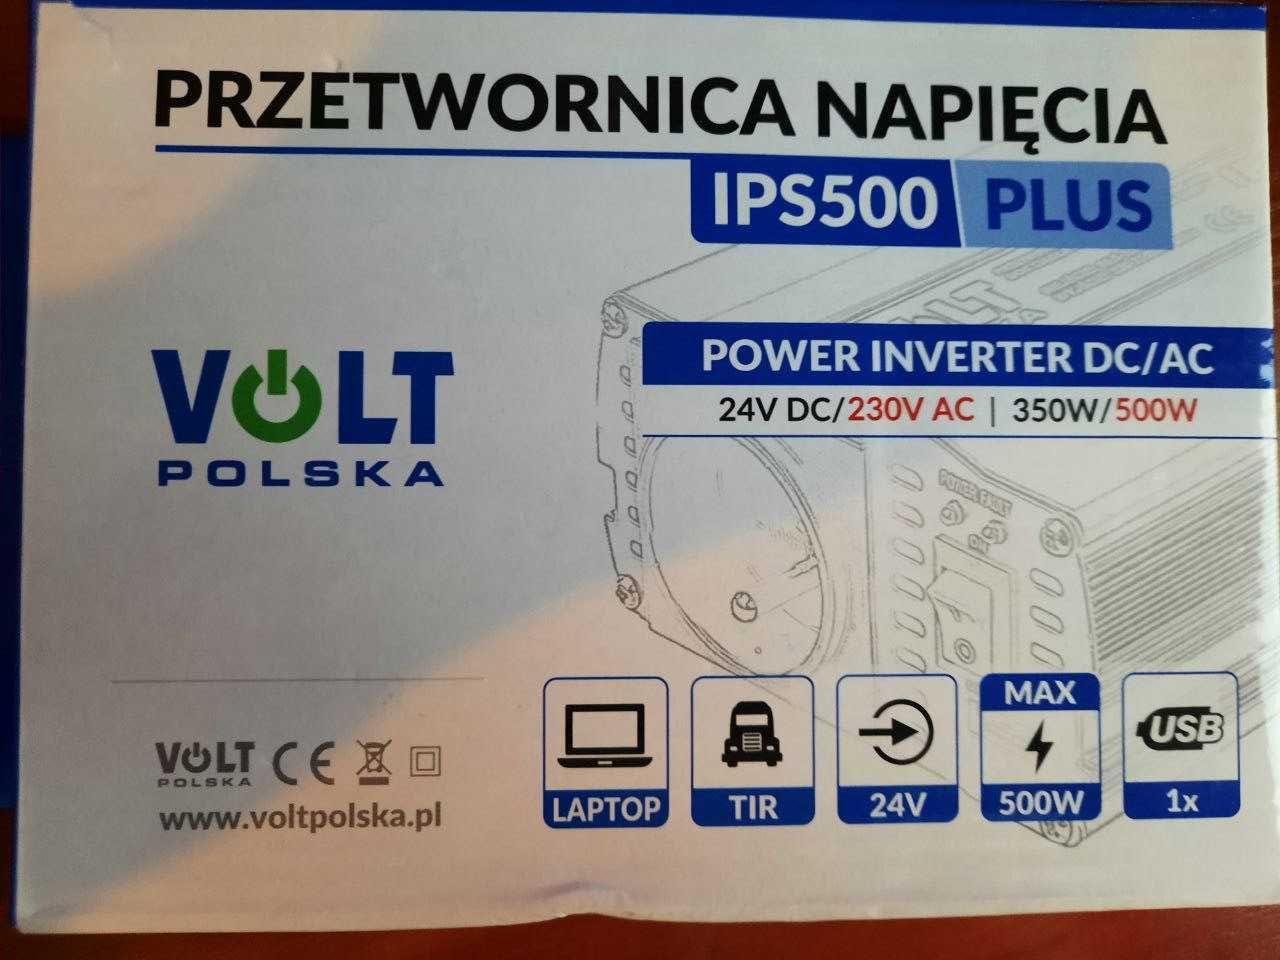 Инвертор преобразователь Volt Polska IPS 500 Plus 350W/500W